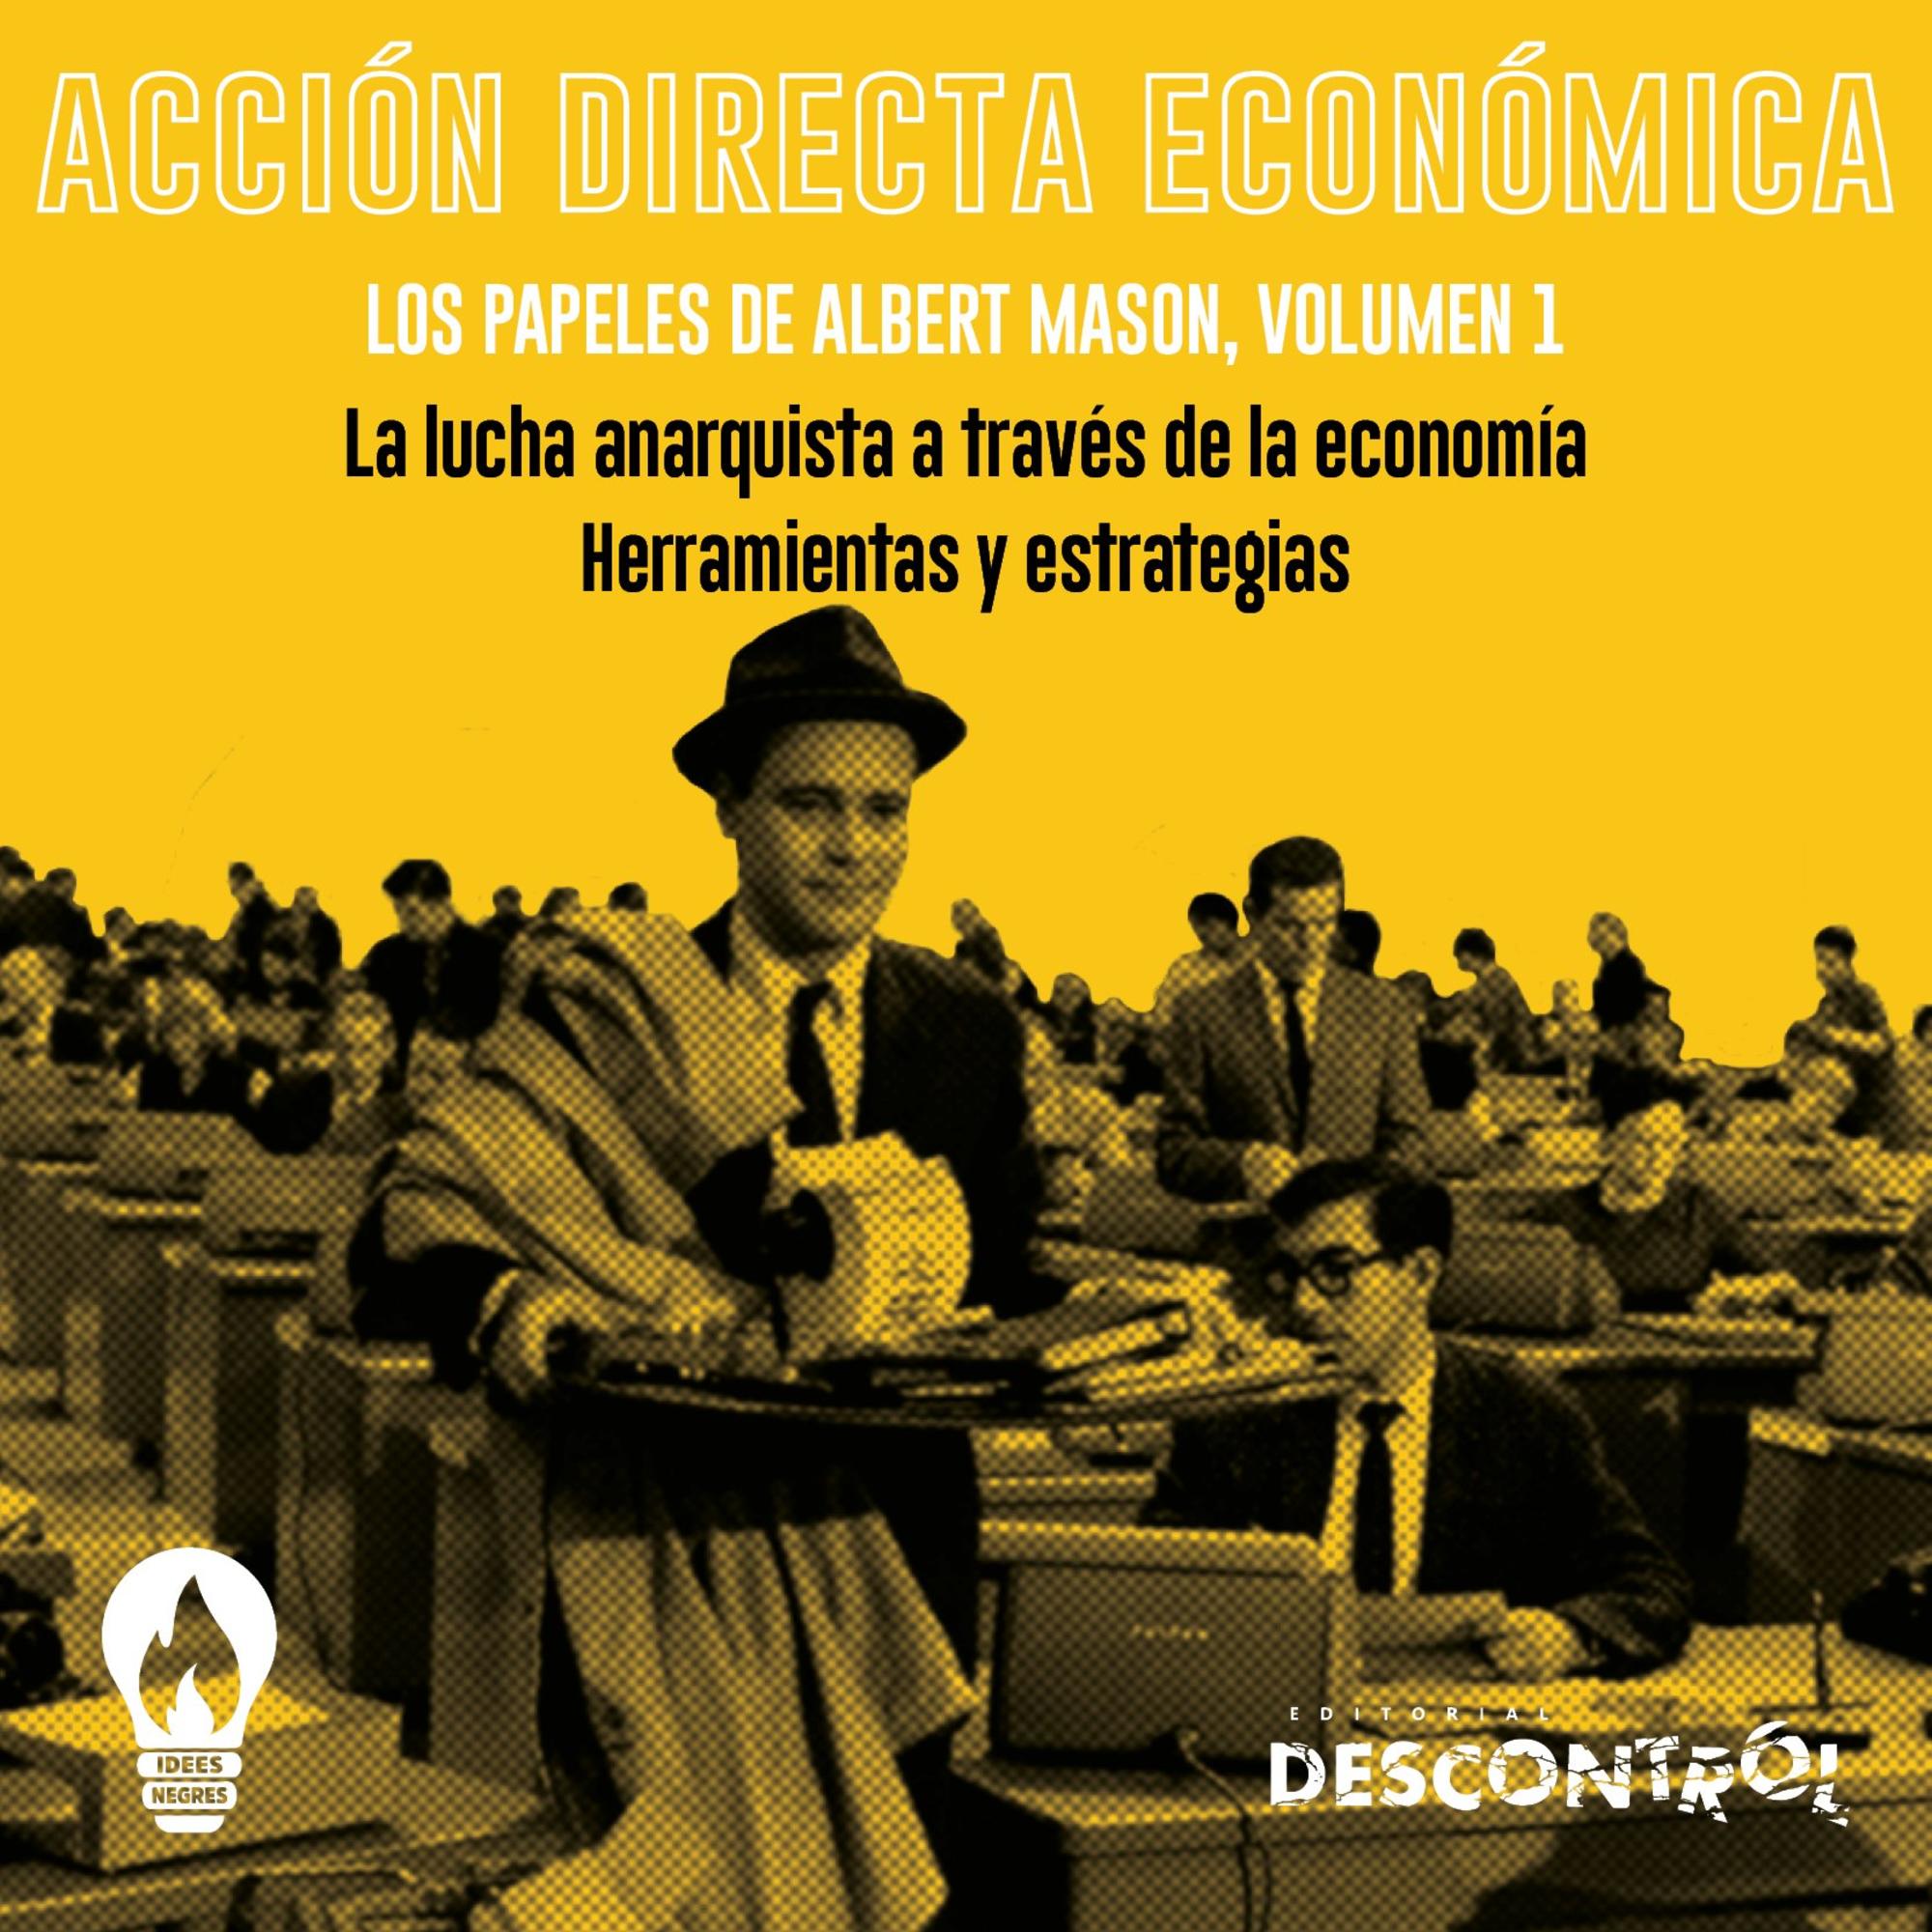 Acción directa económica